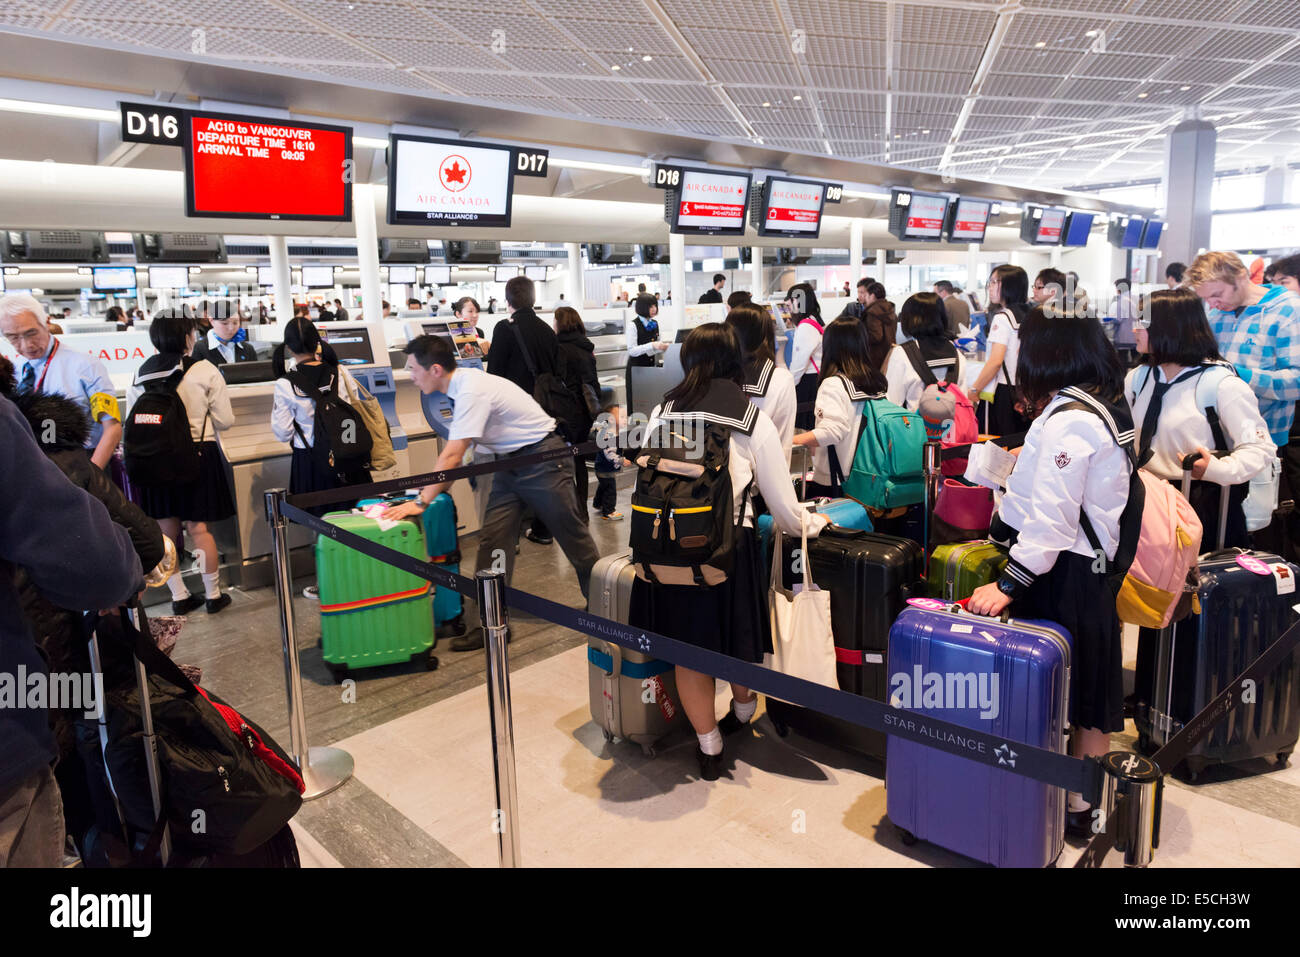 Japanische Schulmädchen aufgereiht am Air Canada Check-in Schalter der  Narita International Airport in Japan Stockfotografie - Alamy